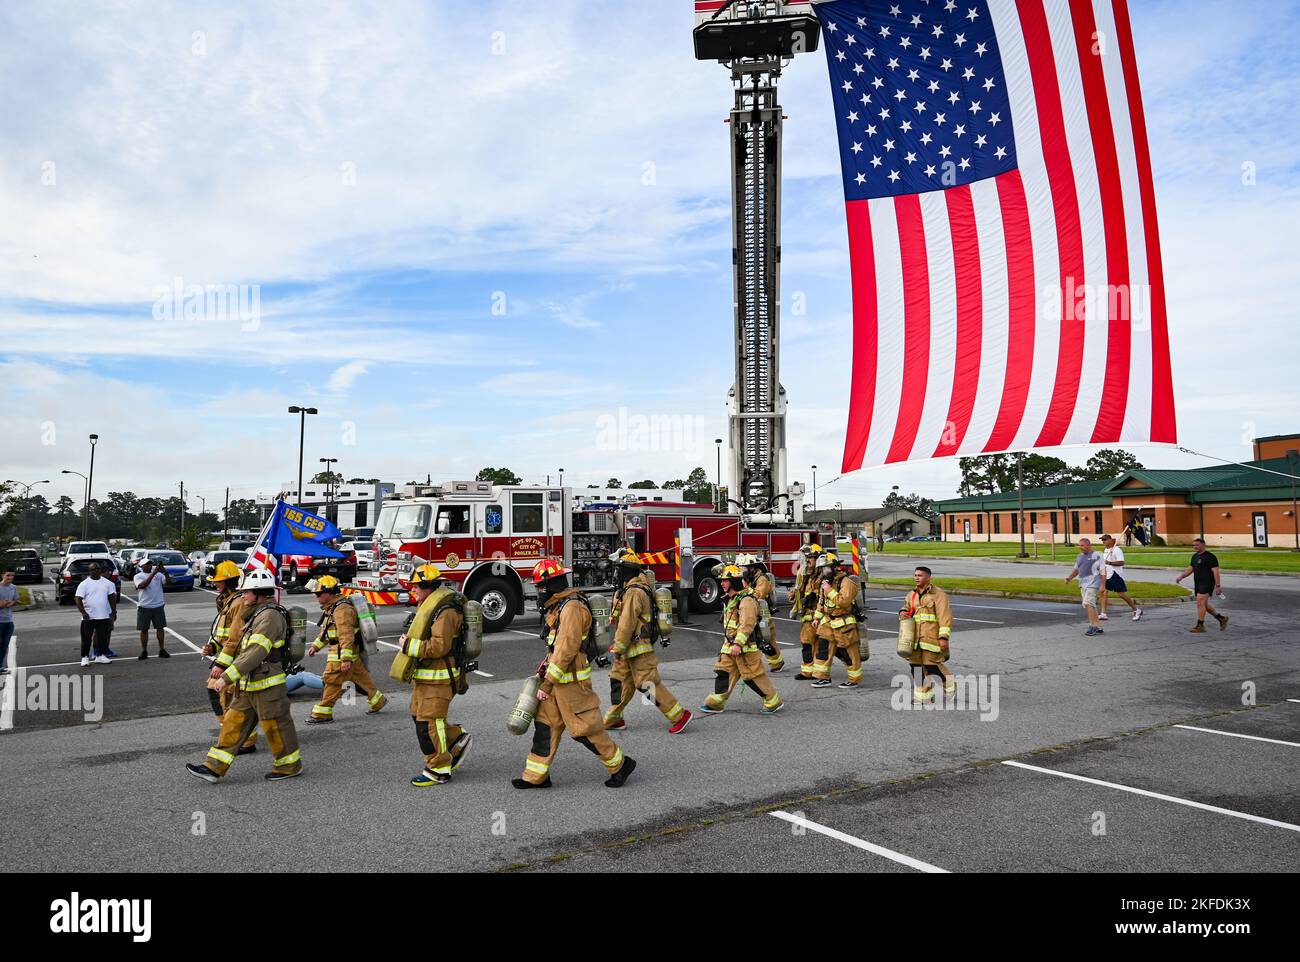 Les membres de l'escadre du transport aérien de 165th ont organisé une course du Mémorial du 5K septembre 9/11 à 10 septembre 2022, à la base de la Garde nationale aérienne de Savannah, en Géorgie, pour honorer ceux qui ont été perdus alors que nous commémorons l'année 21st depuis les attaques de 11 septembre 2001. La course de 5k a donné à l'armée, aux pompiers et à la communauté locale l'occasion de démontrer leur respect et de memorialiser ceux qui ont été perdus lors des attaques contre 11 septembre 2001. Les pompiers de Garden City et Pooler ont utilisé leurs camions d'incendie pour accrocher un grand drapeau américain sur la ligne de départ/d'arrivée de la course. Banque D'Images